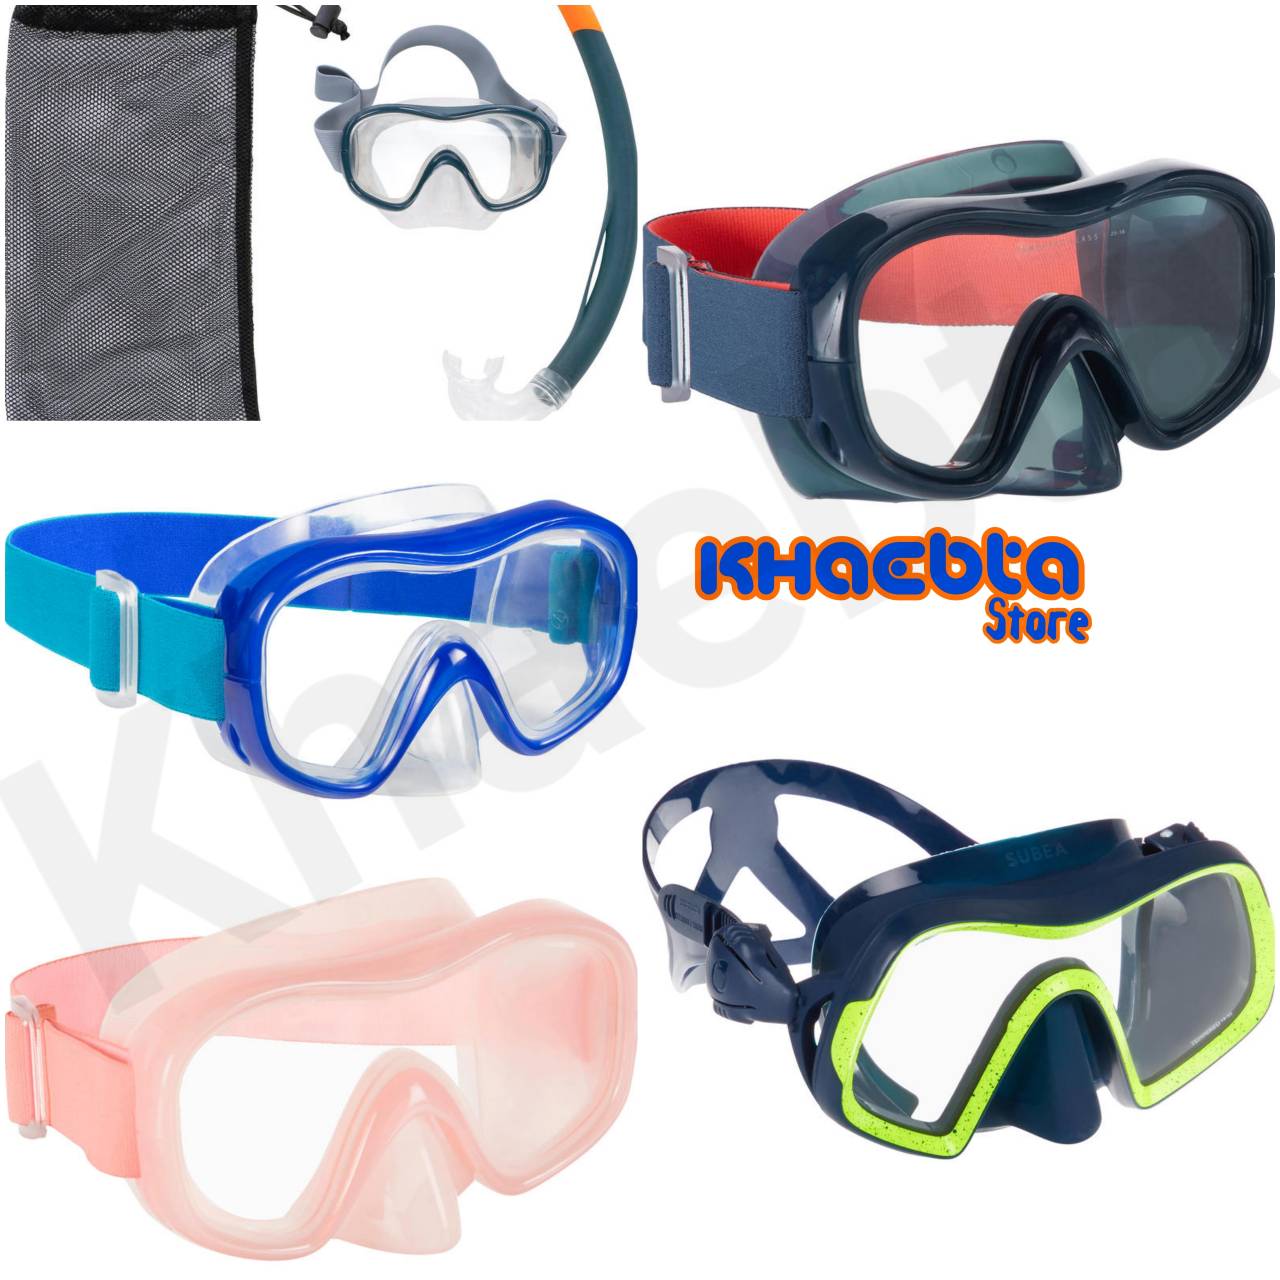 แว่นตาว่ายน้ำ แว่นตาดำน้ำ Snorkelling Mask หน้ากากดำน้ำ Snorkel ท่อหายใจ หน้ากากดำน้ำตื้นสำหรับผู้ใหญ่